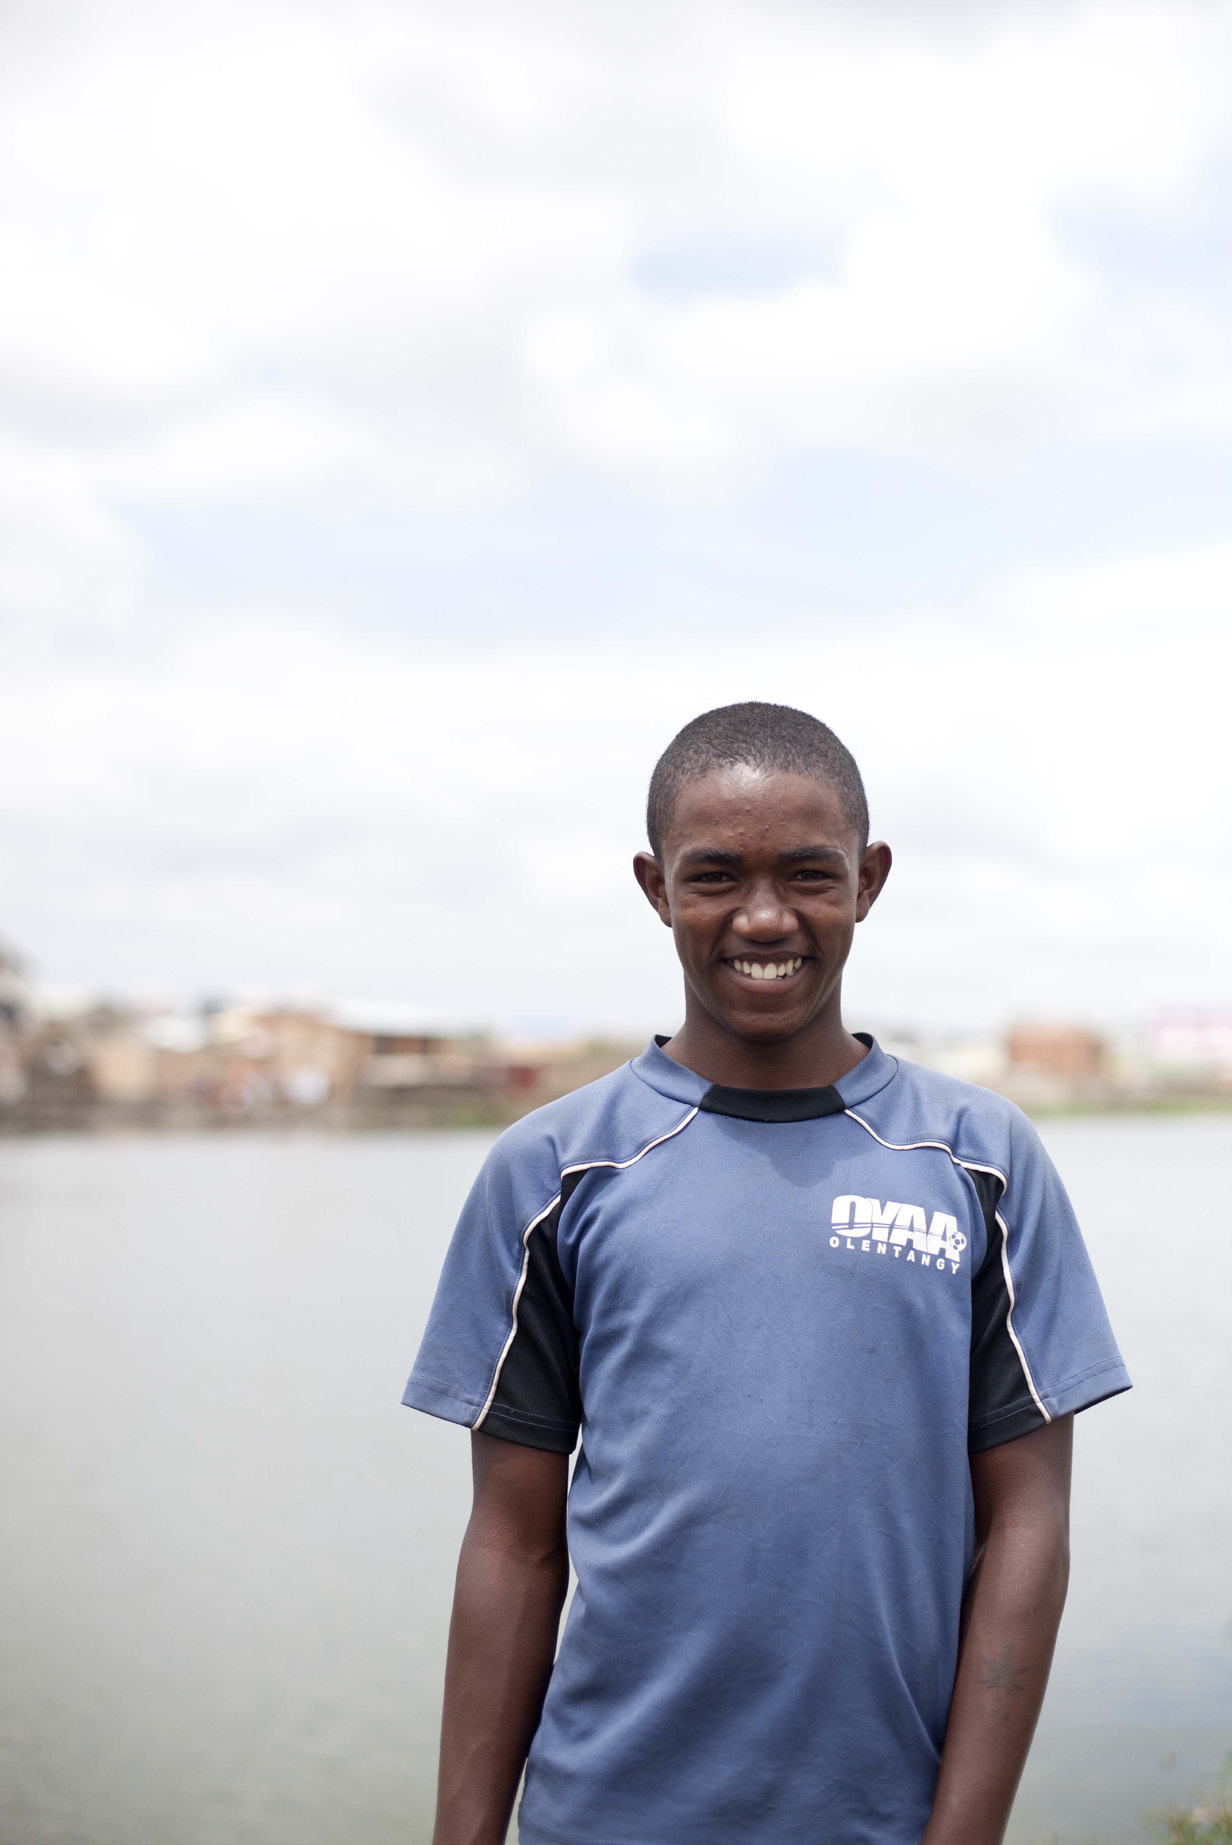 Tojo Mamiharilala Tojo kommt aus einer sehr armen Familie eines Vorstadtviertels von Antananarivo. Er lebt mit seiner Mutter und seinem Schwiegervater.